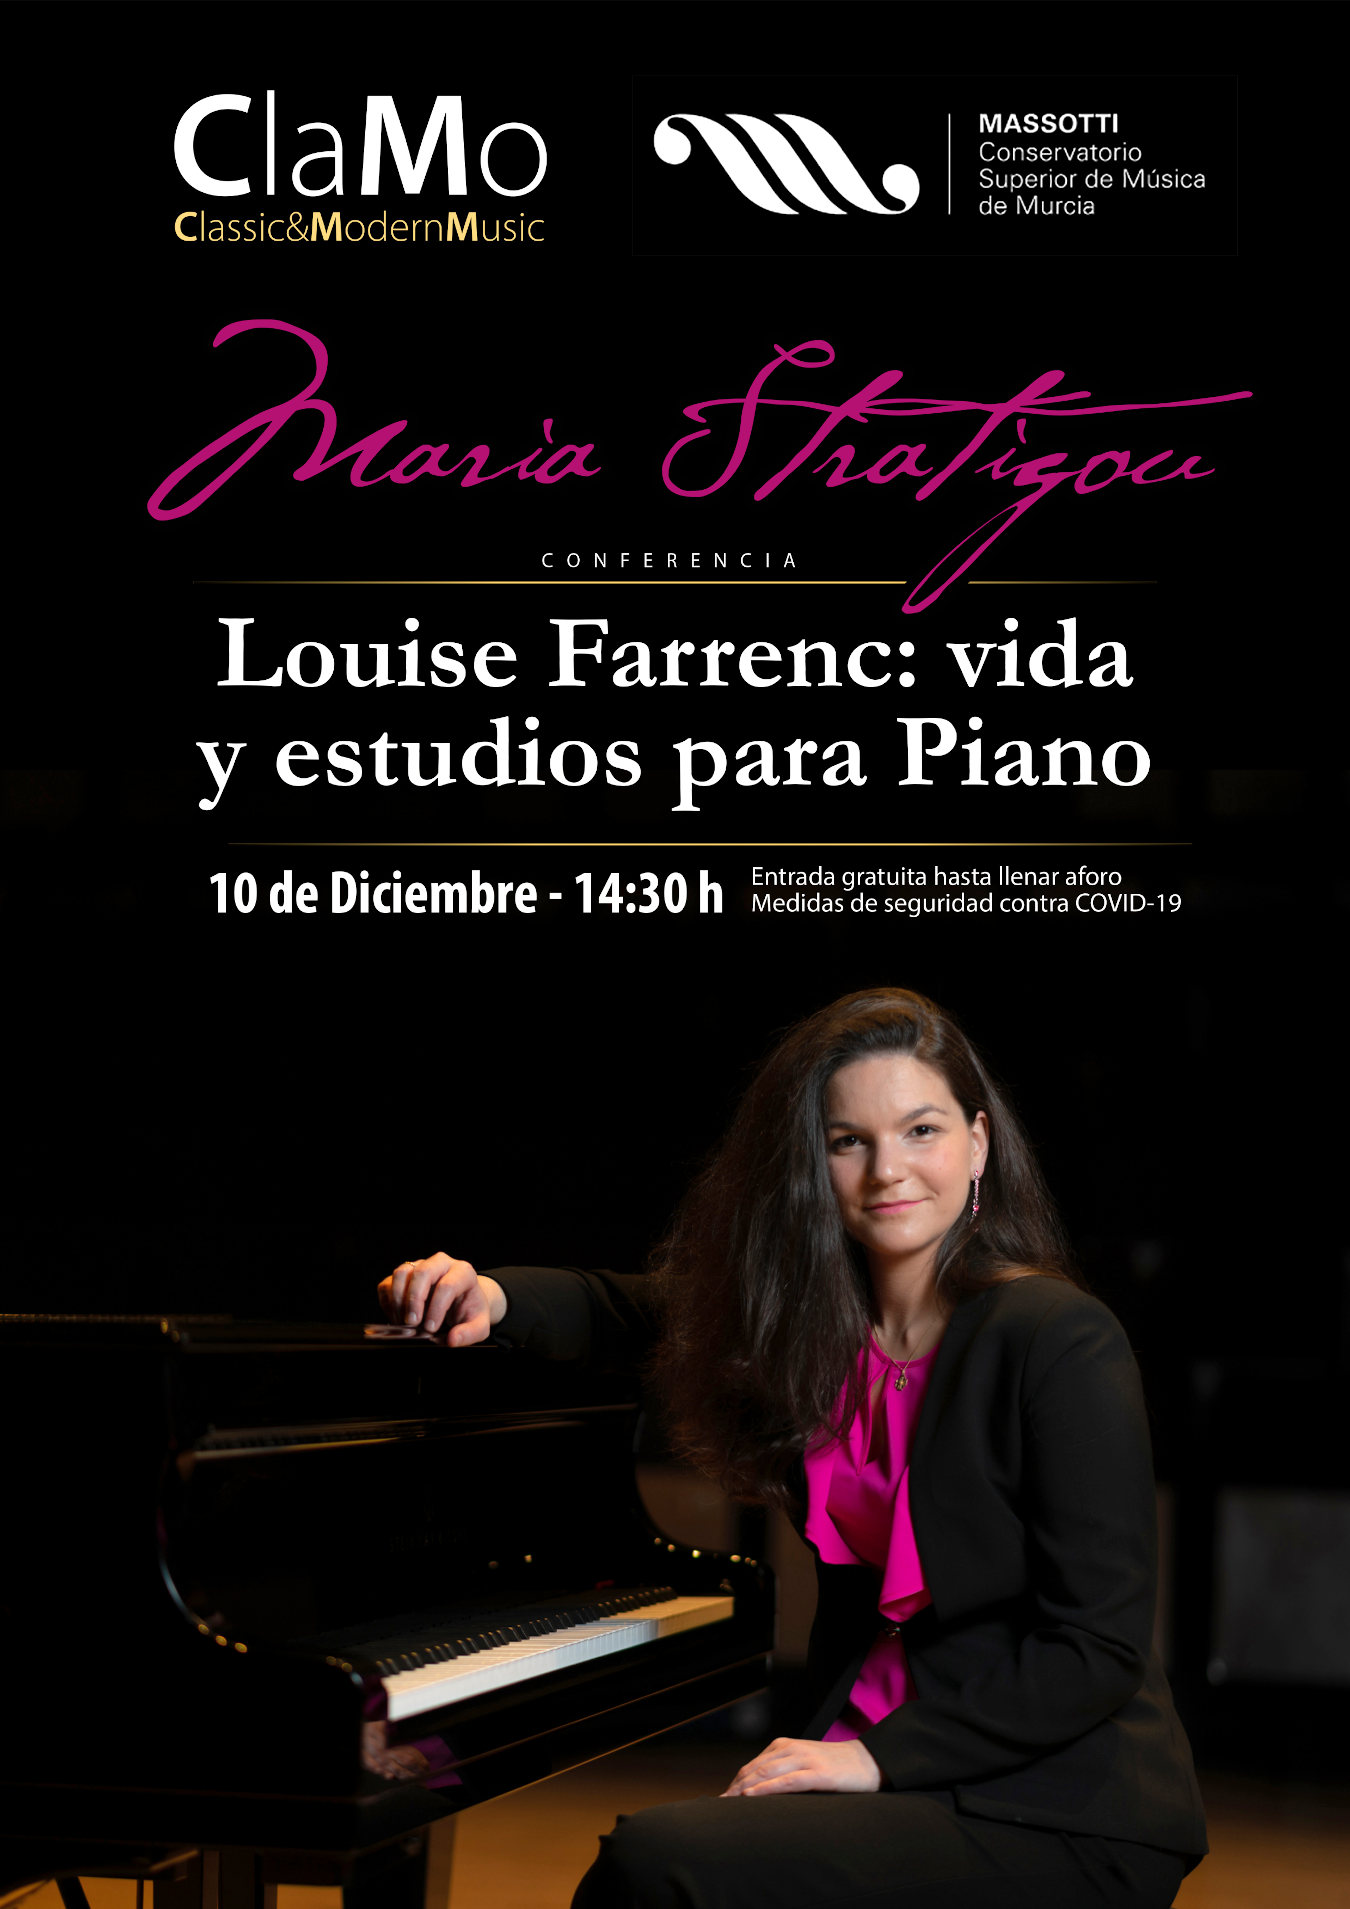 Conferencia de Maria Stratigou: “Louise Farrenc: vida y estudios para piano” en Murcia